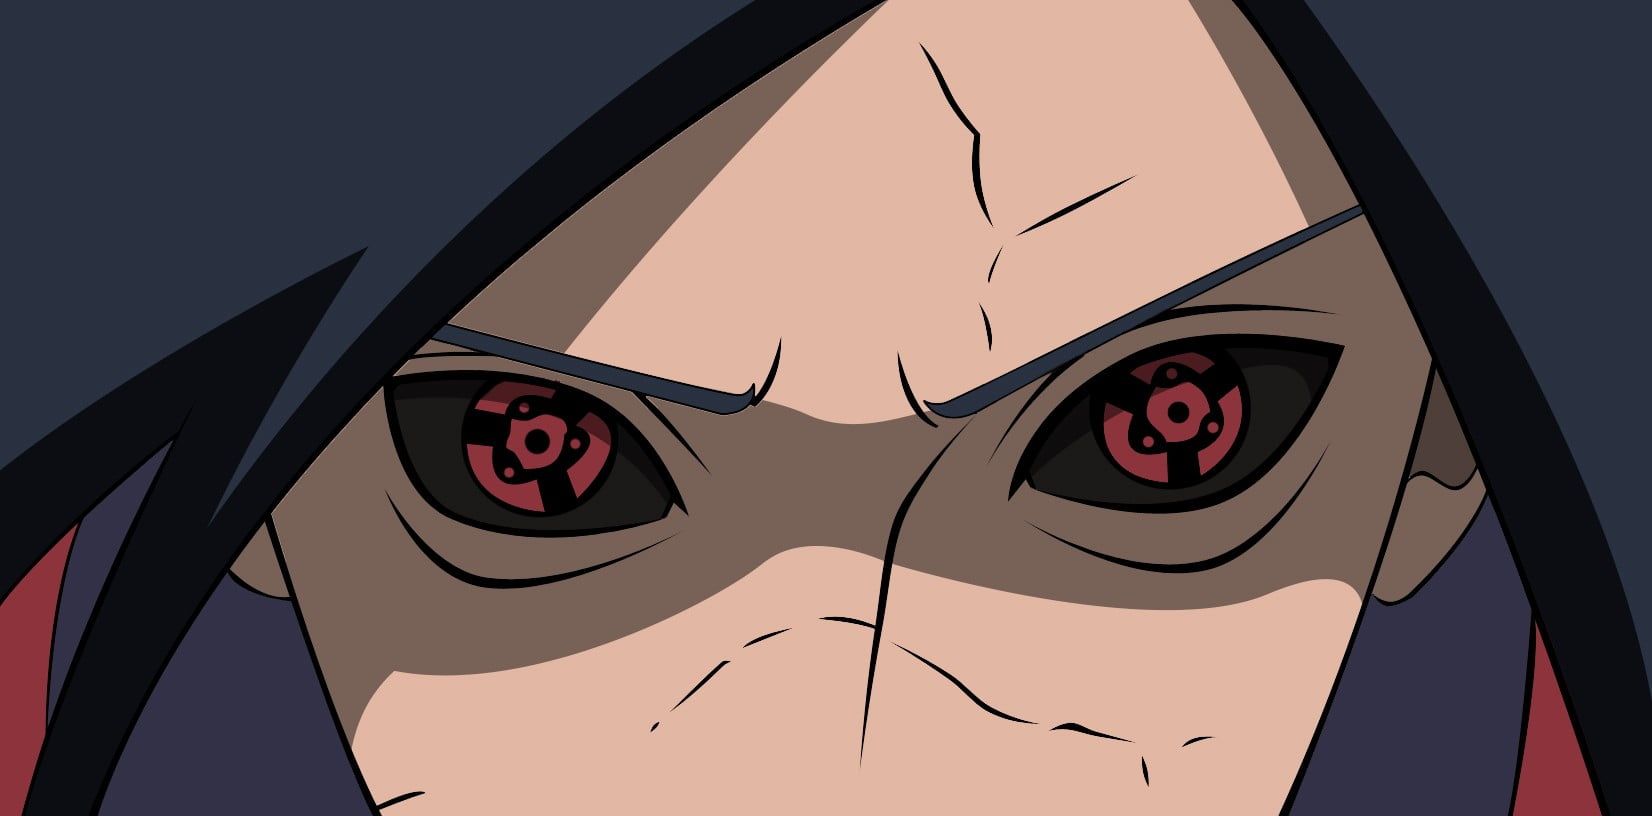 É possível utilizar o Mangekyou Sharingan novamente após o Rinnegan ter sido despertado em Naruto Shippuden?